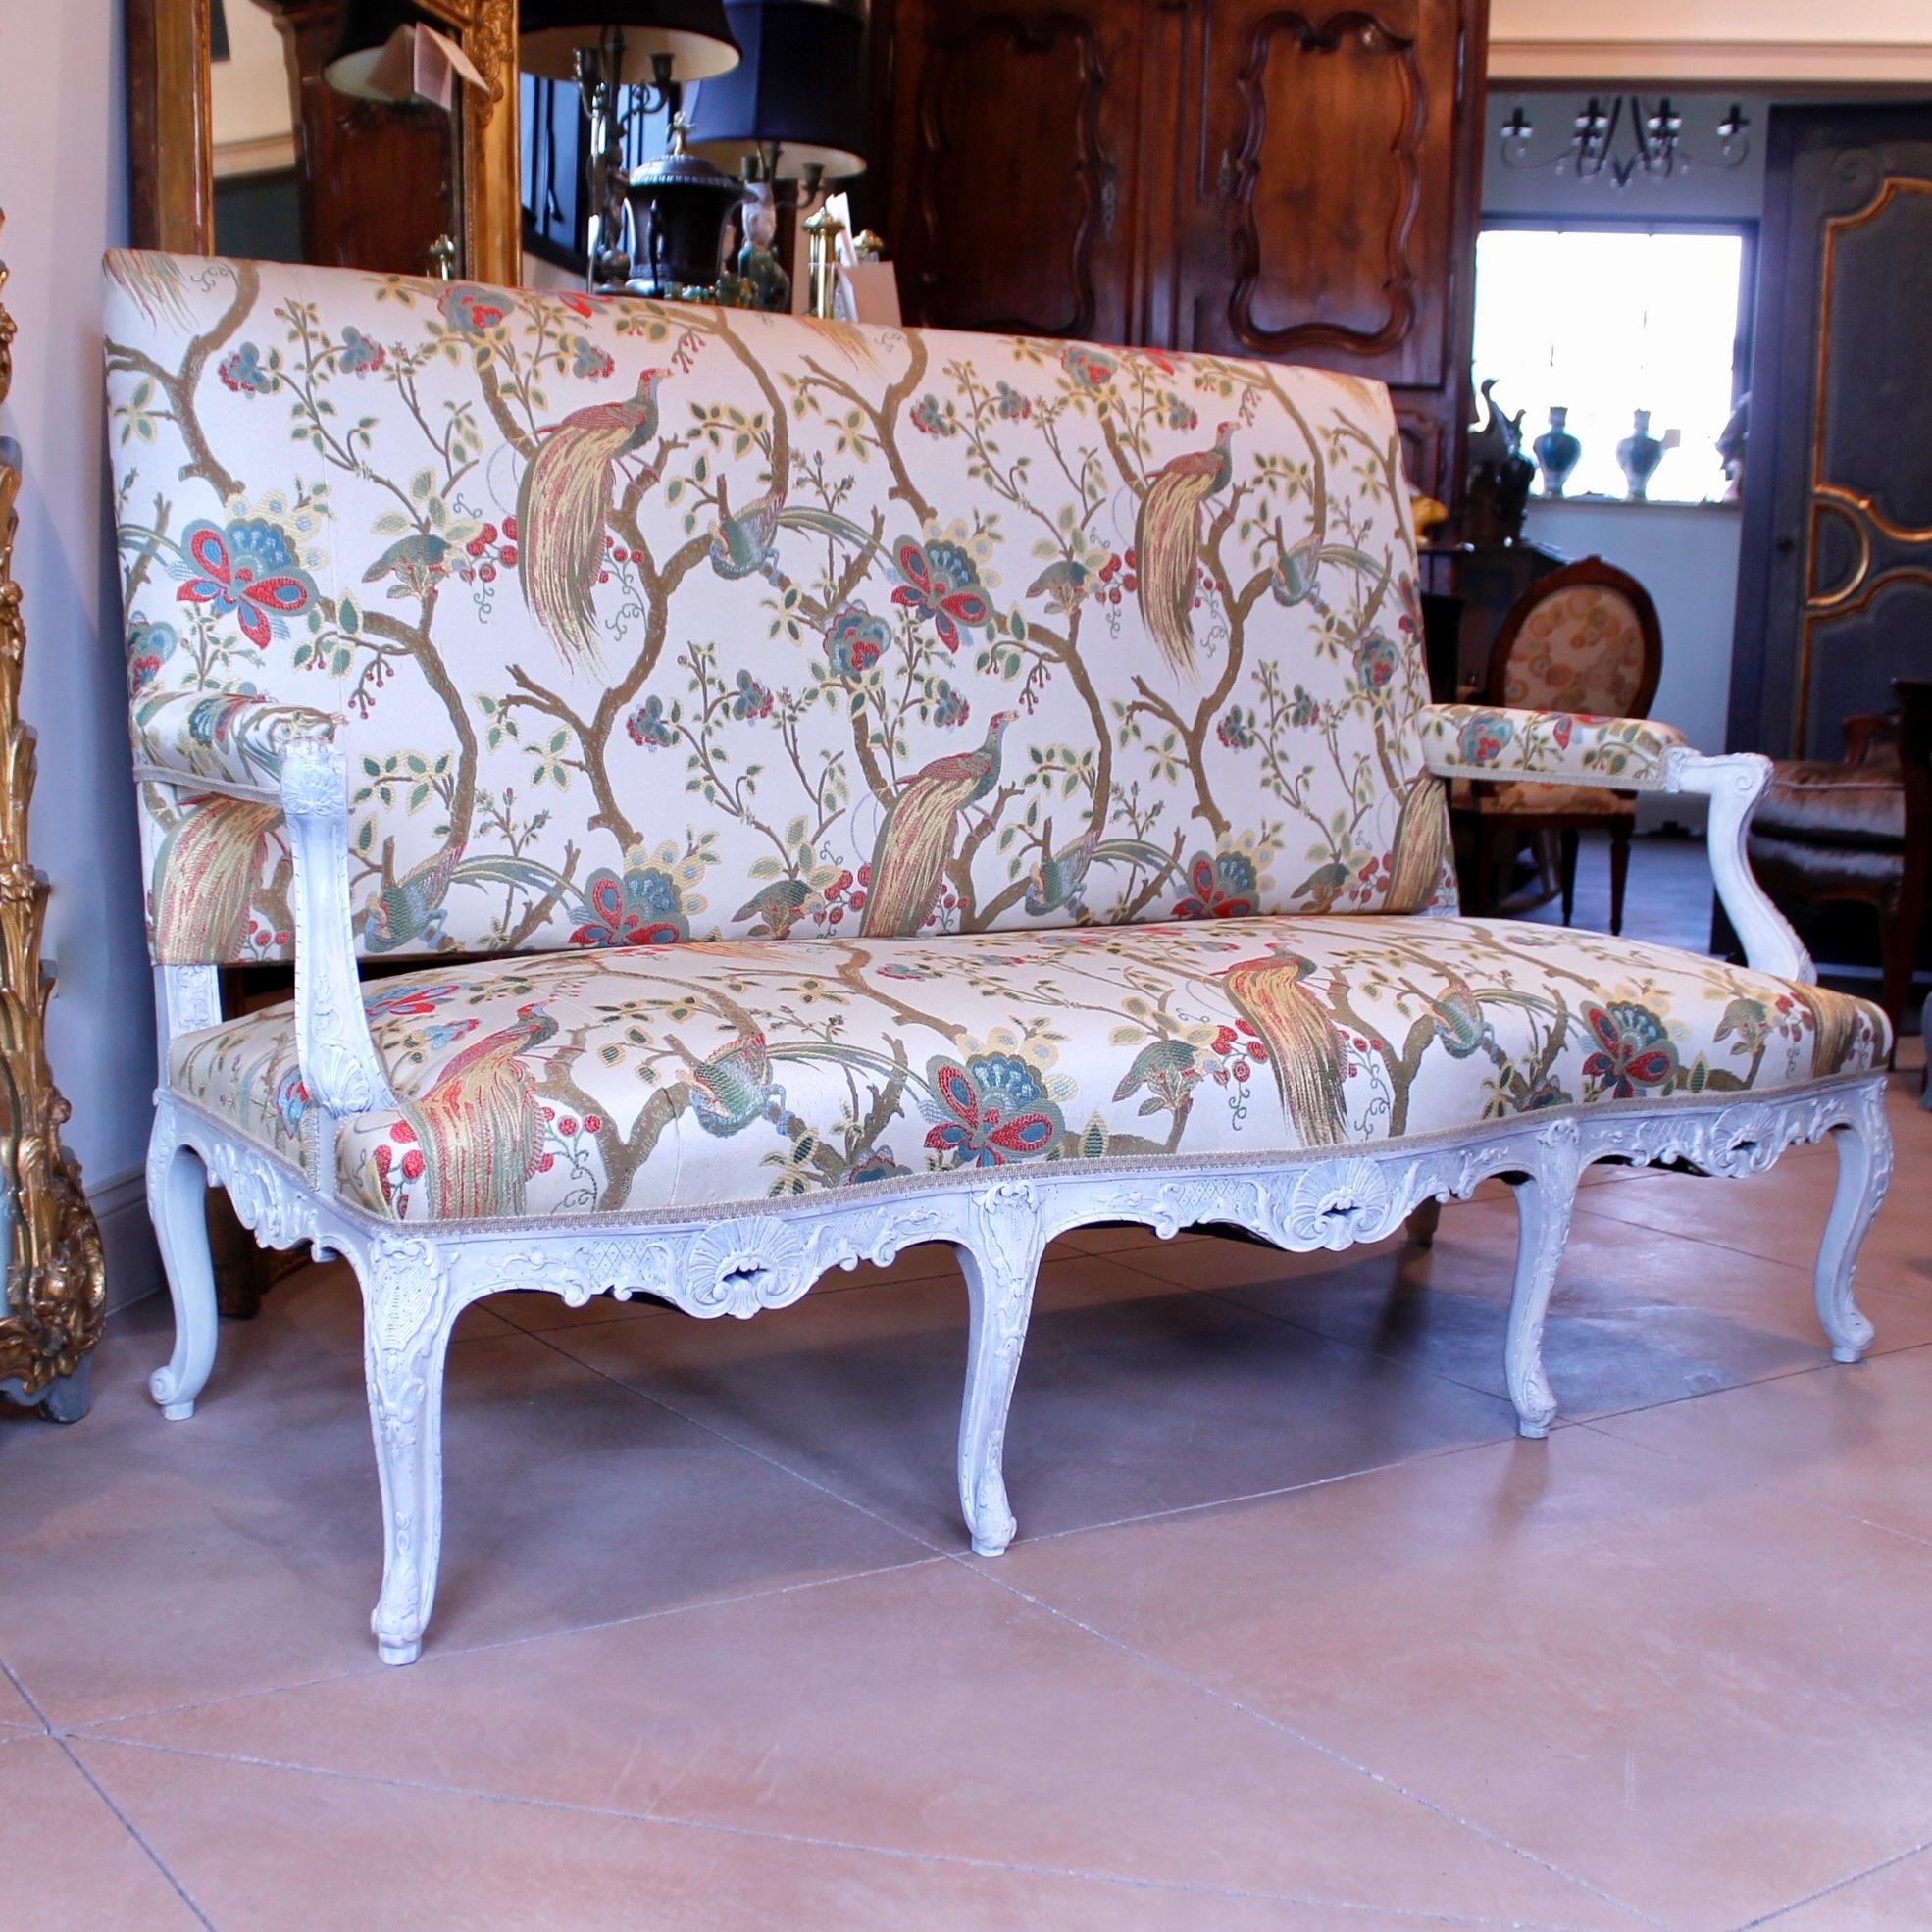 Canapé ou sofa de style Régence vers 1890, très finement sculpté, peint en crème et fraîchement tapissé d'un tissu d'ameublement de style 18e siècle avec des branches et des faisans. La sculpture est nette et très détaillée, et l'effet est très